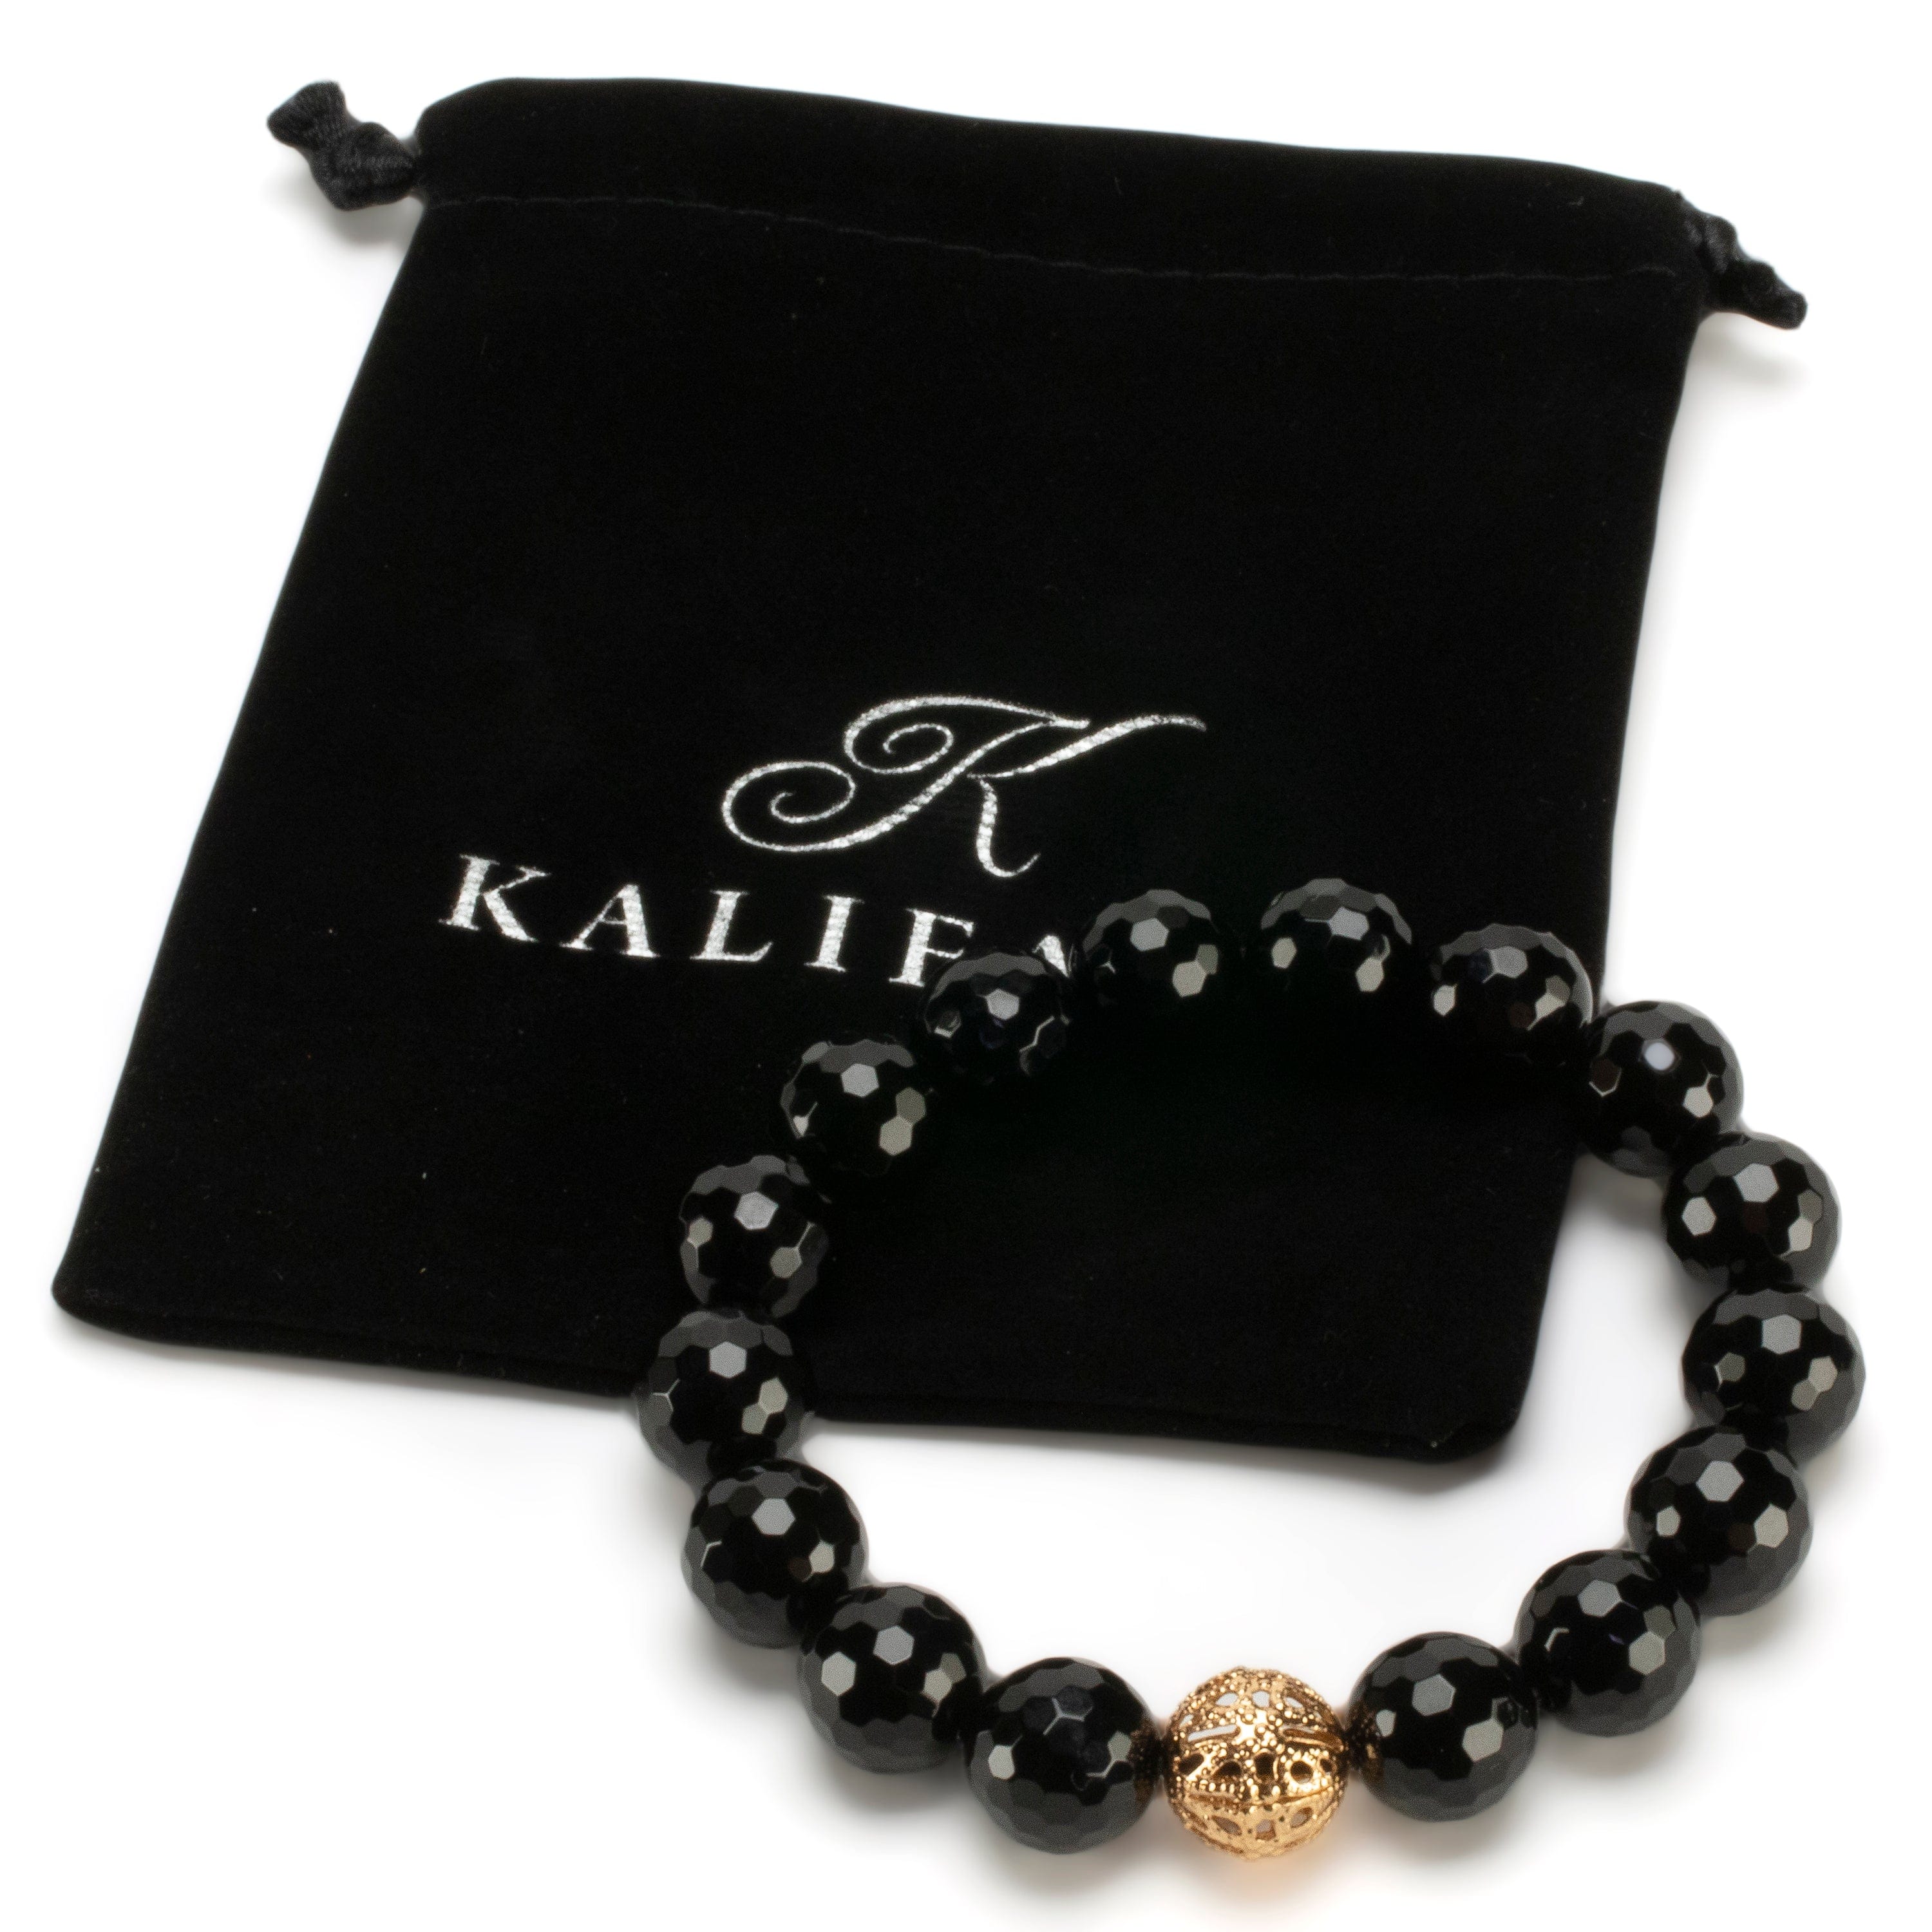 Kalifano Gemstone Bracelets Polished Banded Carnelian 12mm Gemstone Bead Elastic Bracelet with Gold Accent Bead GOLD-BGP-067